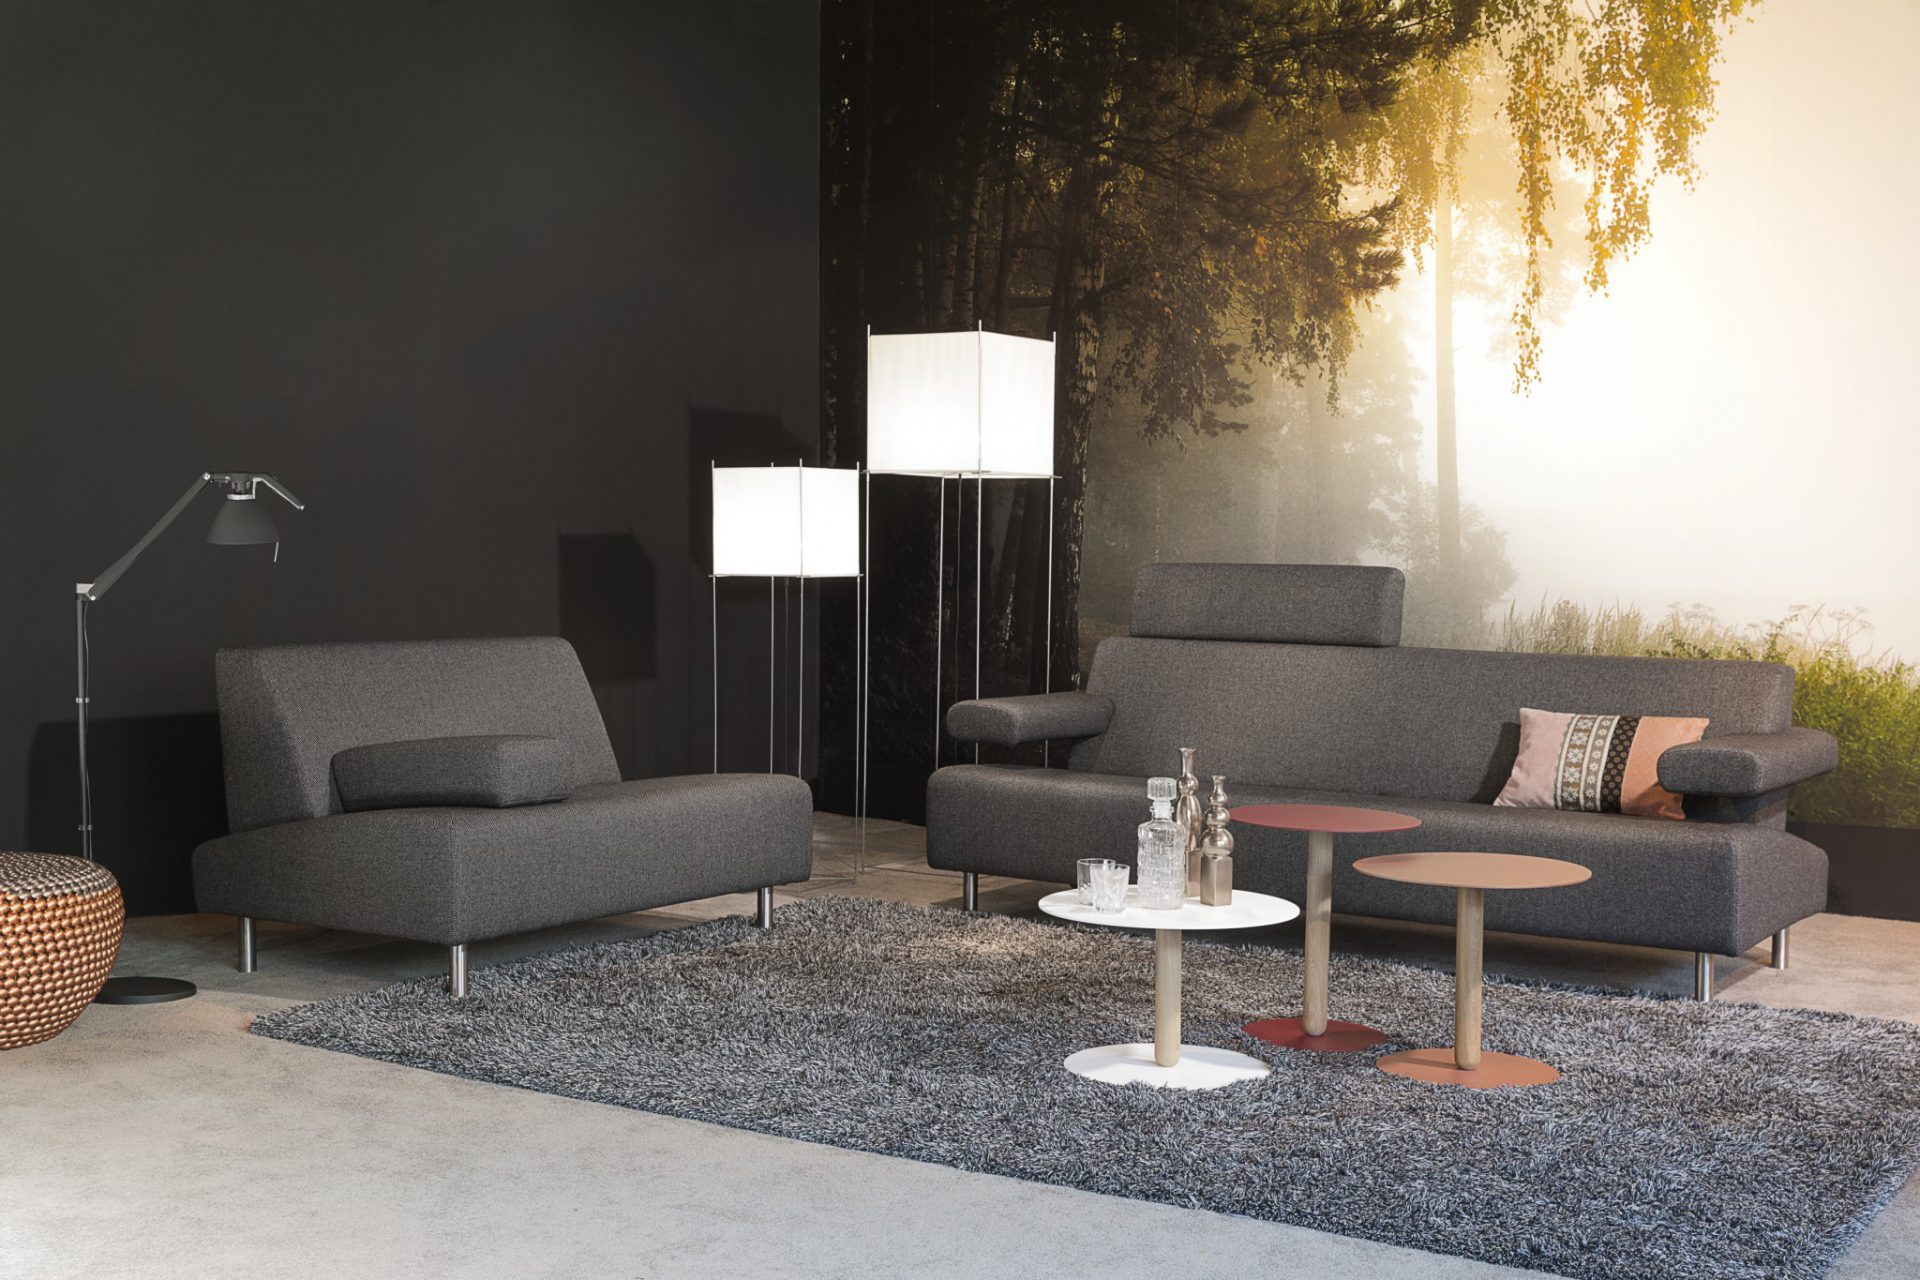 Havee meubelen | Hoogebeen Interieur